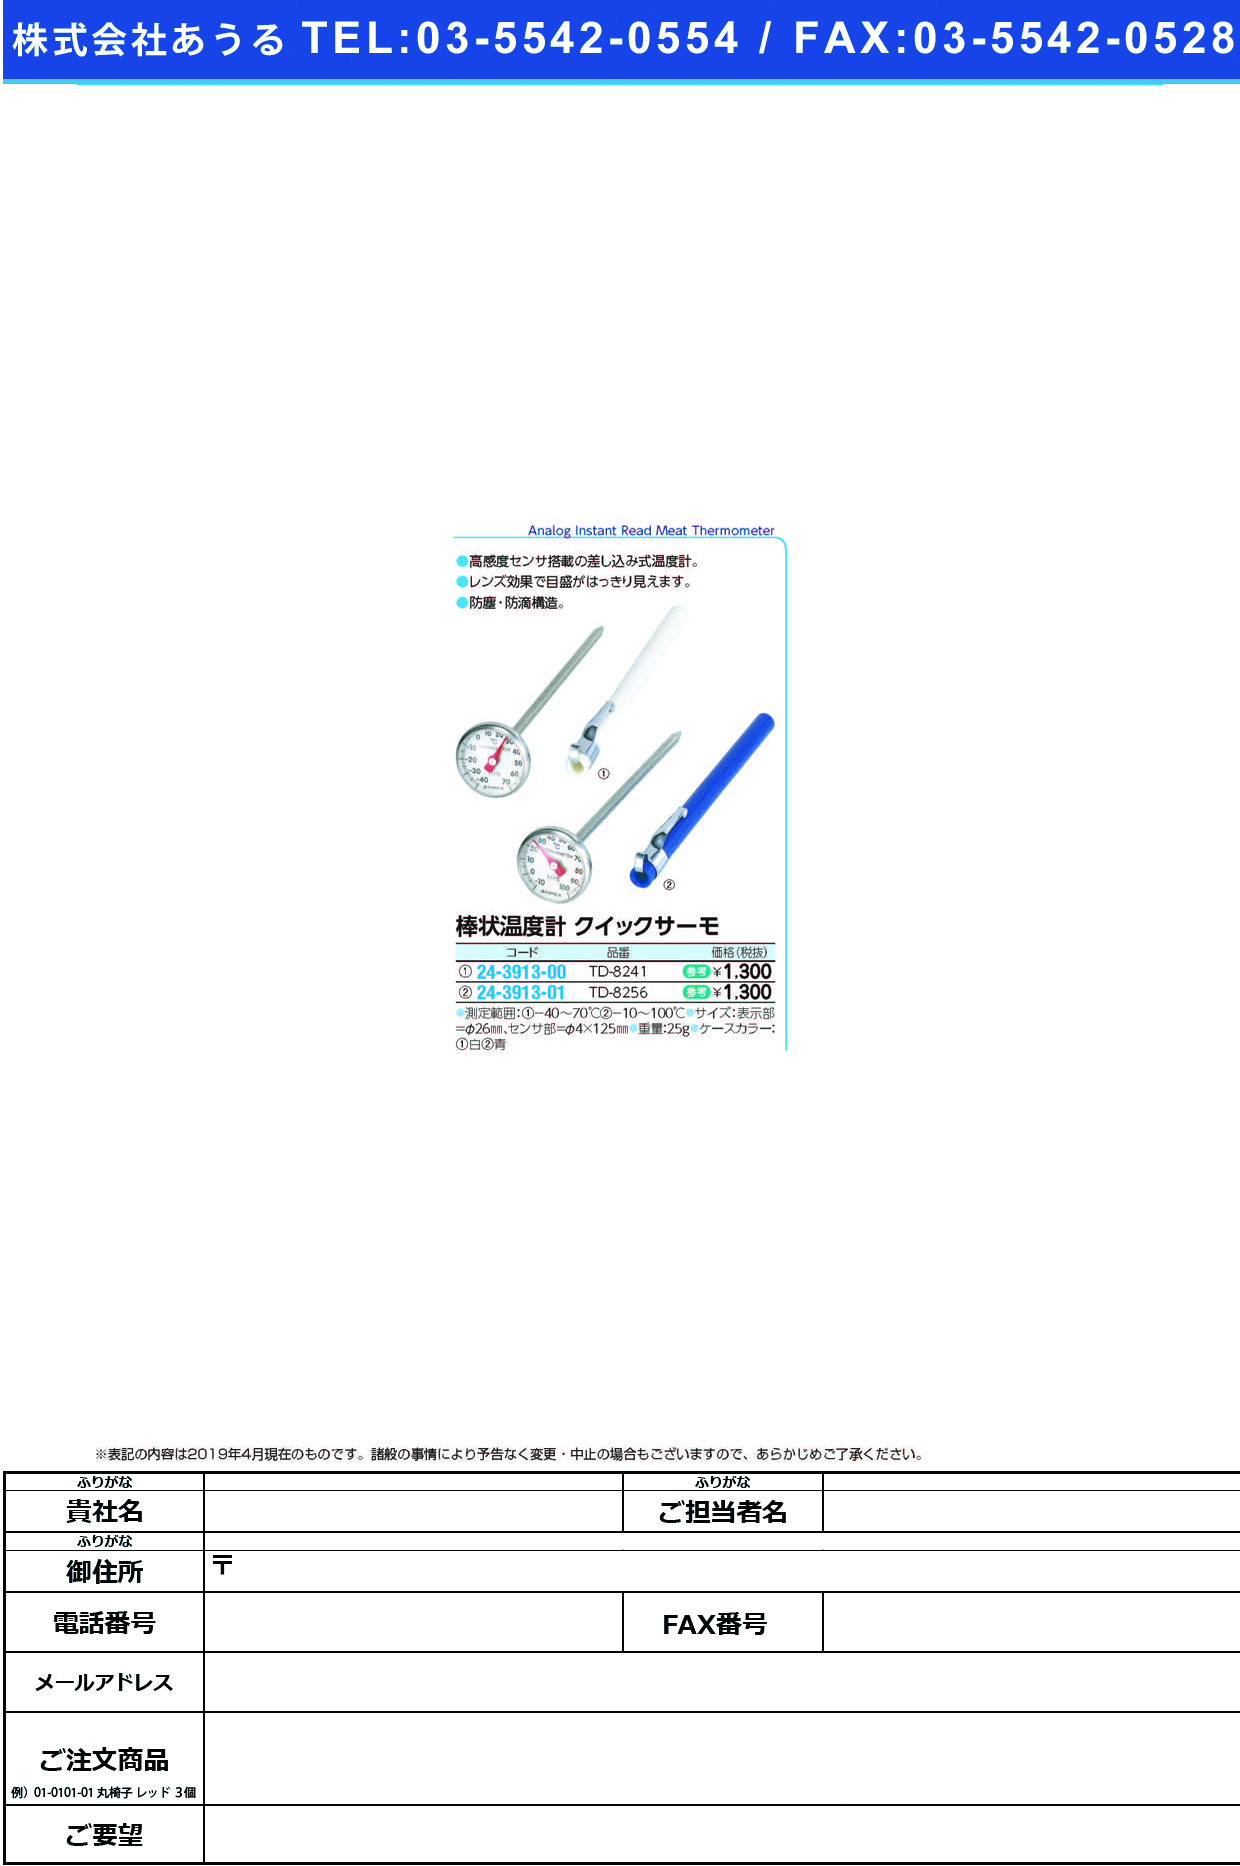 (24-3913-00)エンペックスクイックサーモ棒状温度計 TD-8241 ｴﾝﾍﾟｯｸｽｸｲｯｸｻｰﾓｵﾝﾄﾞｹｲ【1個単位】【2019年カタログ商品】